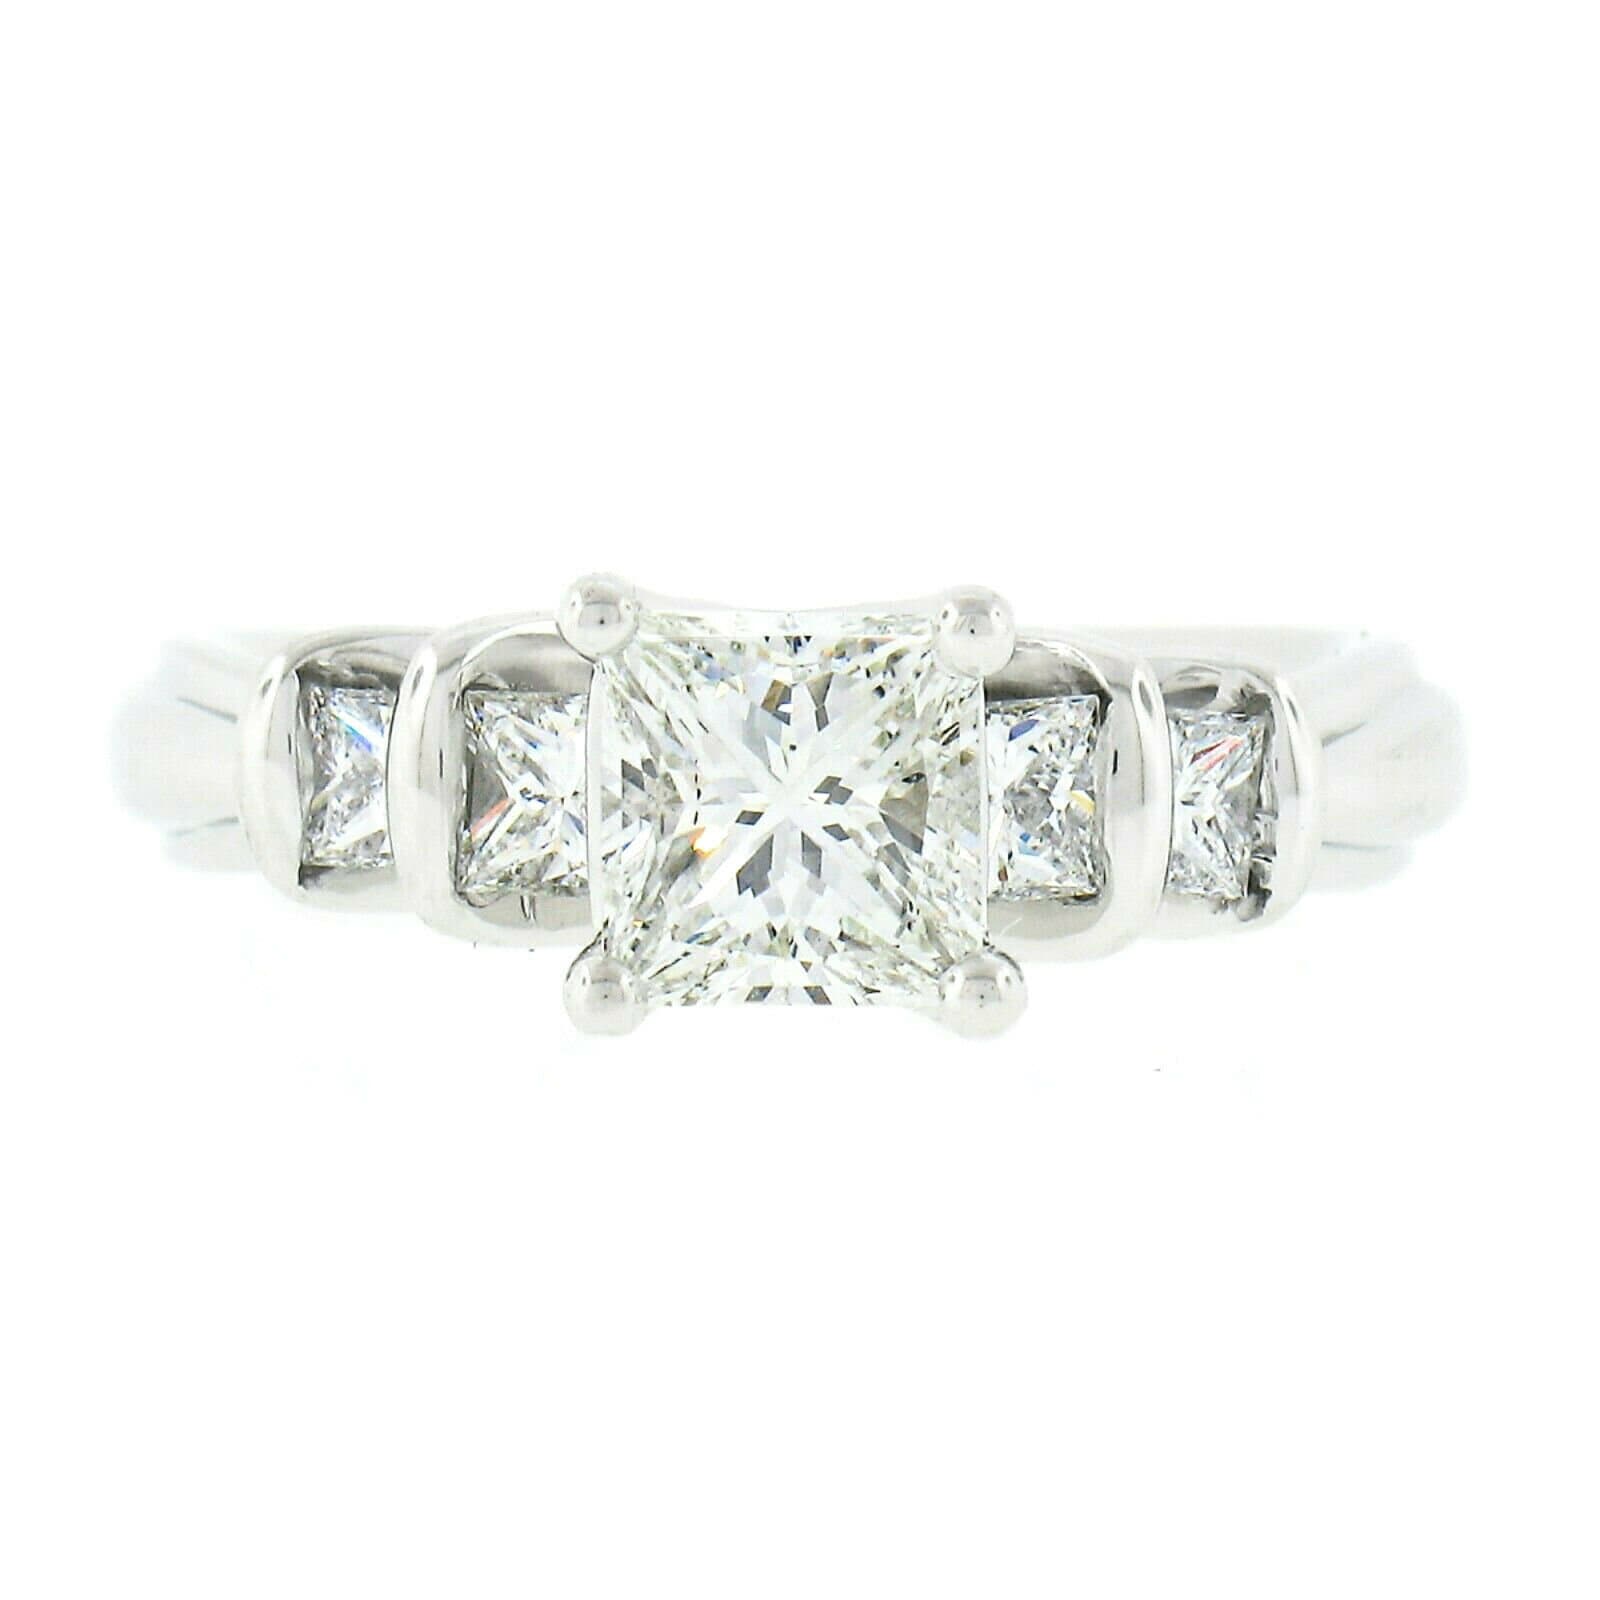 Neu Designer Verragio Platinum 1.64Ctw Gia Zertifizierte Princess Cut Prong Set Diamant Mit Kanalseiten Verlobungs - Oder Versprechensring von BadisJewelers